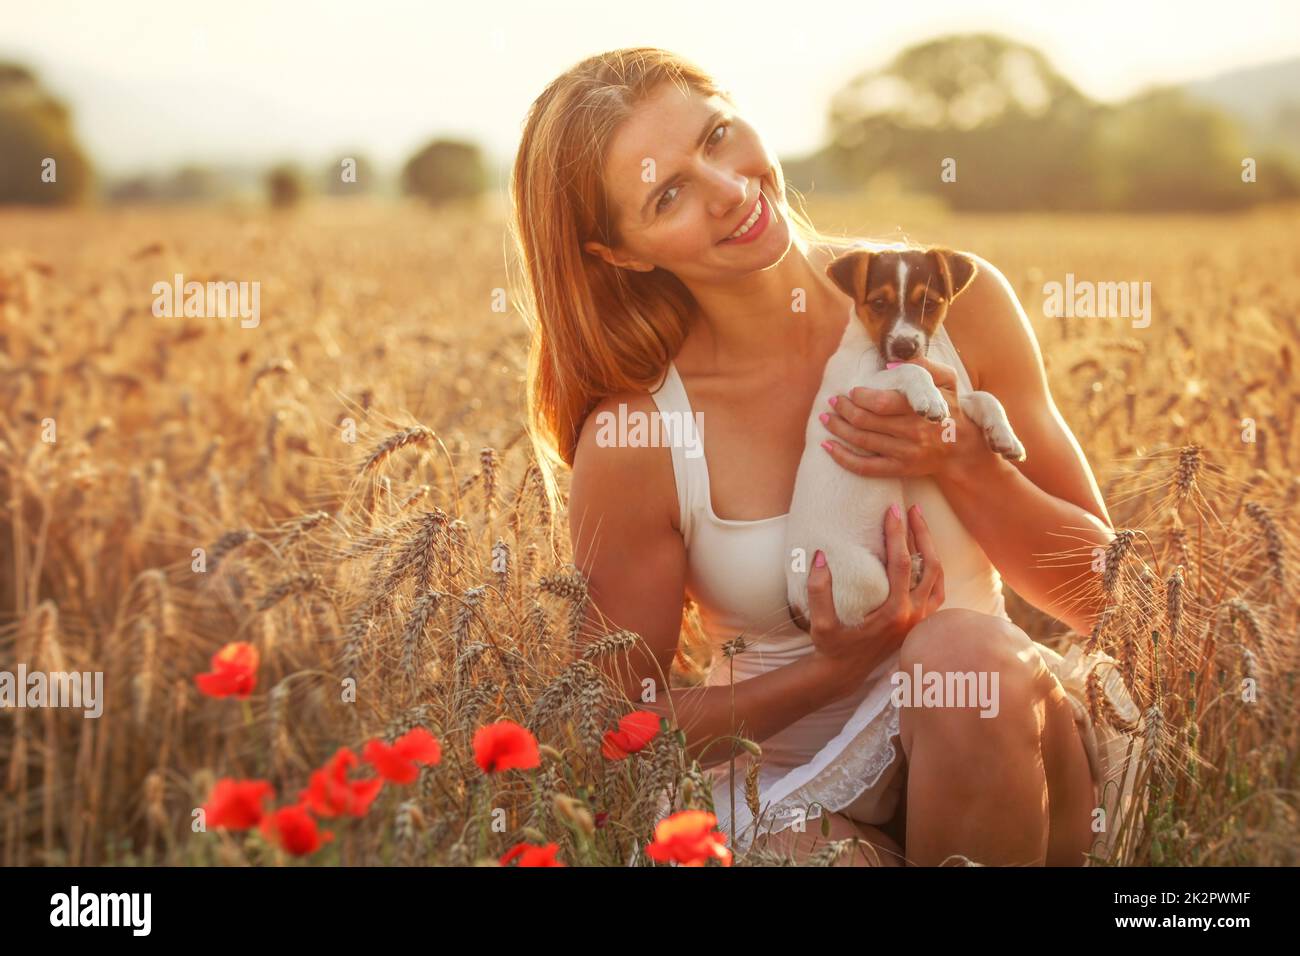 Junge Frau hält Jack Russell Terrier Welpen auf ihre Hände, roter Mohn im Vordergrund, Sonnenuntergang Weizen leuchtet Feld hinter sich. Stockfoto